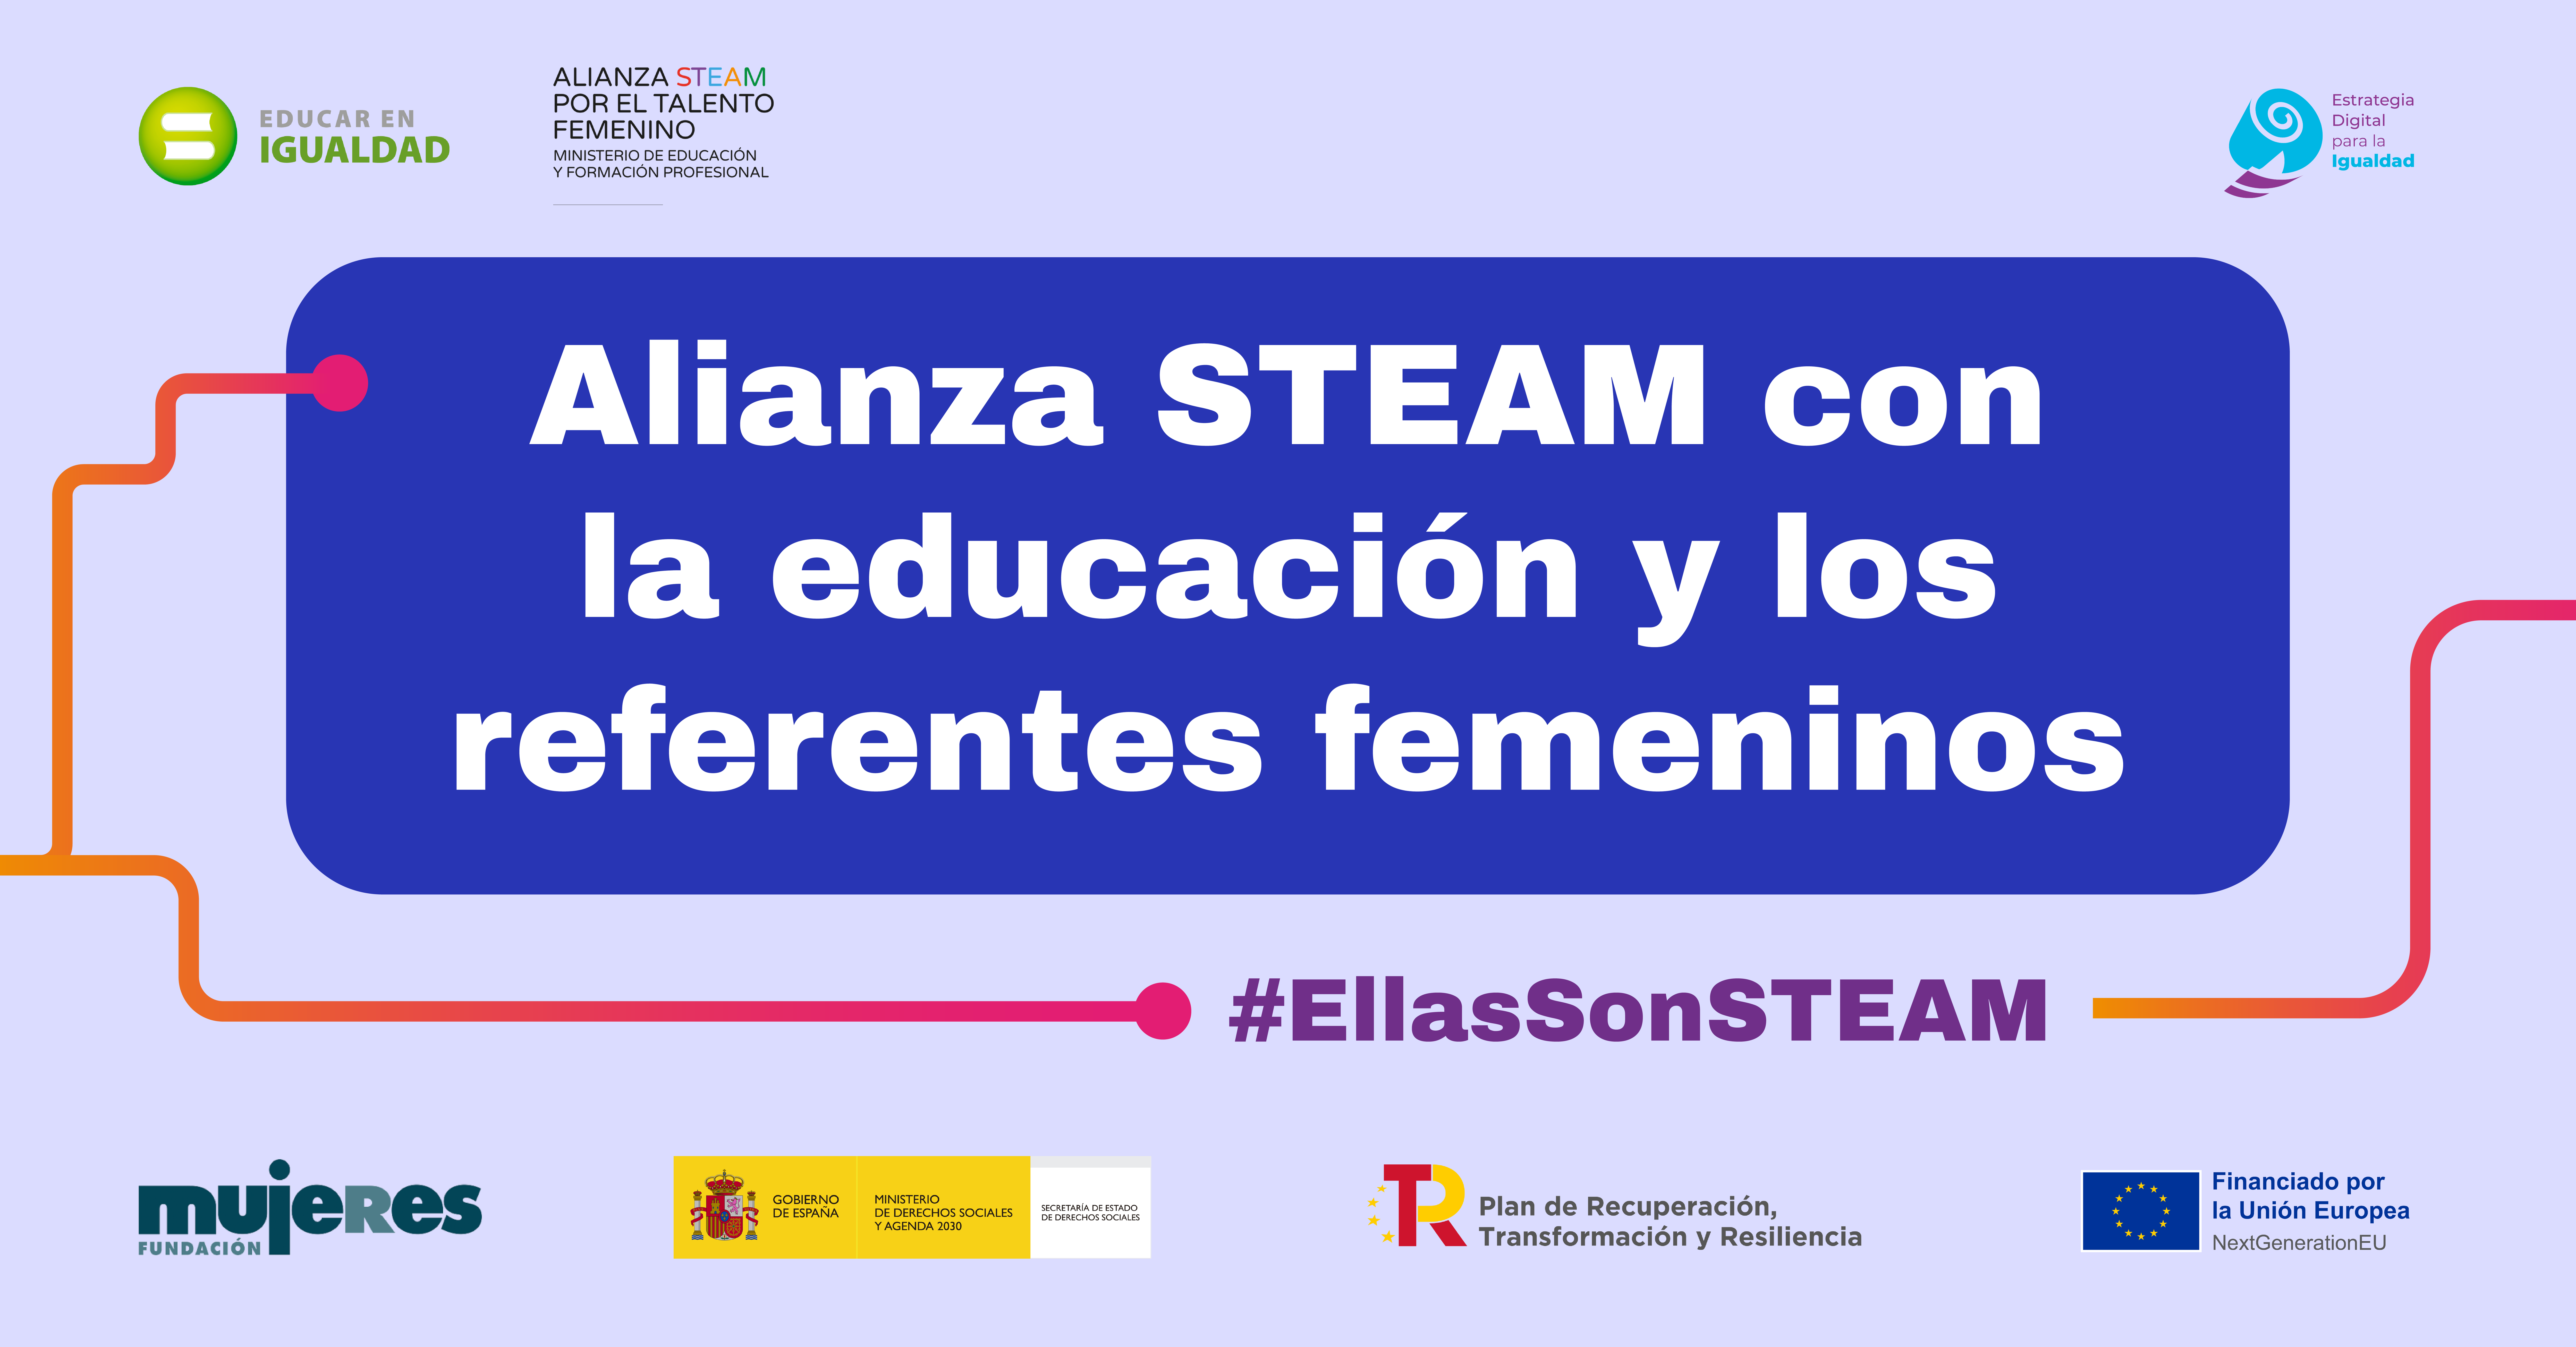 Featured image for “#11F #EllasSonSTEAM Alianza STEAM con la educación y los referentes femeninos”